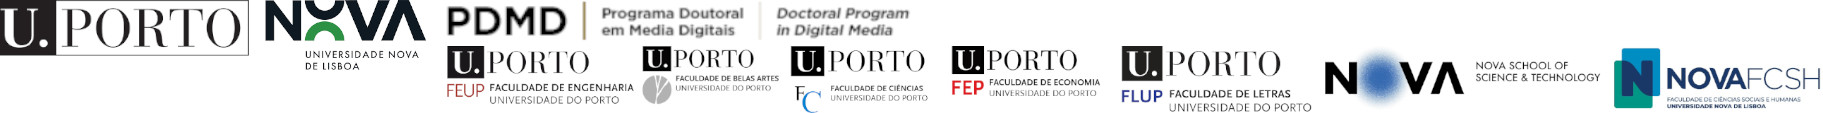 Programa Doutoral em Media Digitais Logo